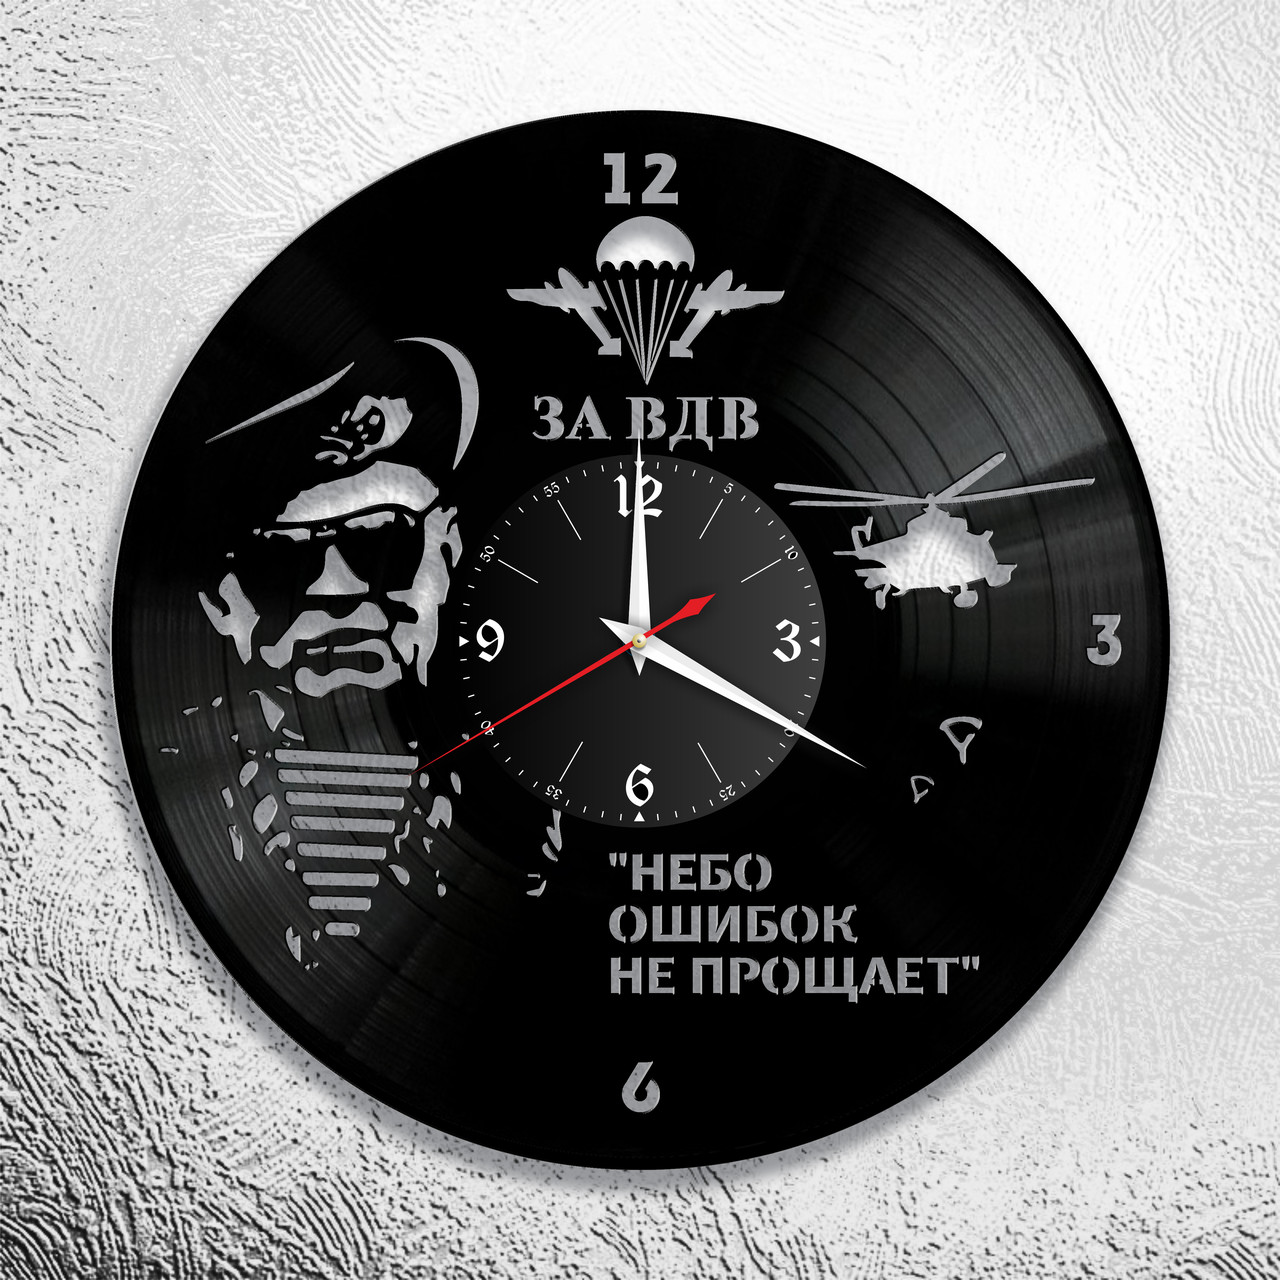 Оригинальные часы из виниловых пластинок  "ВДВ" версия 1, фото 1